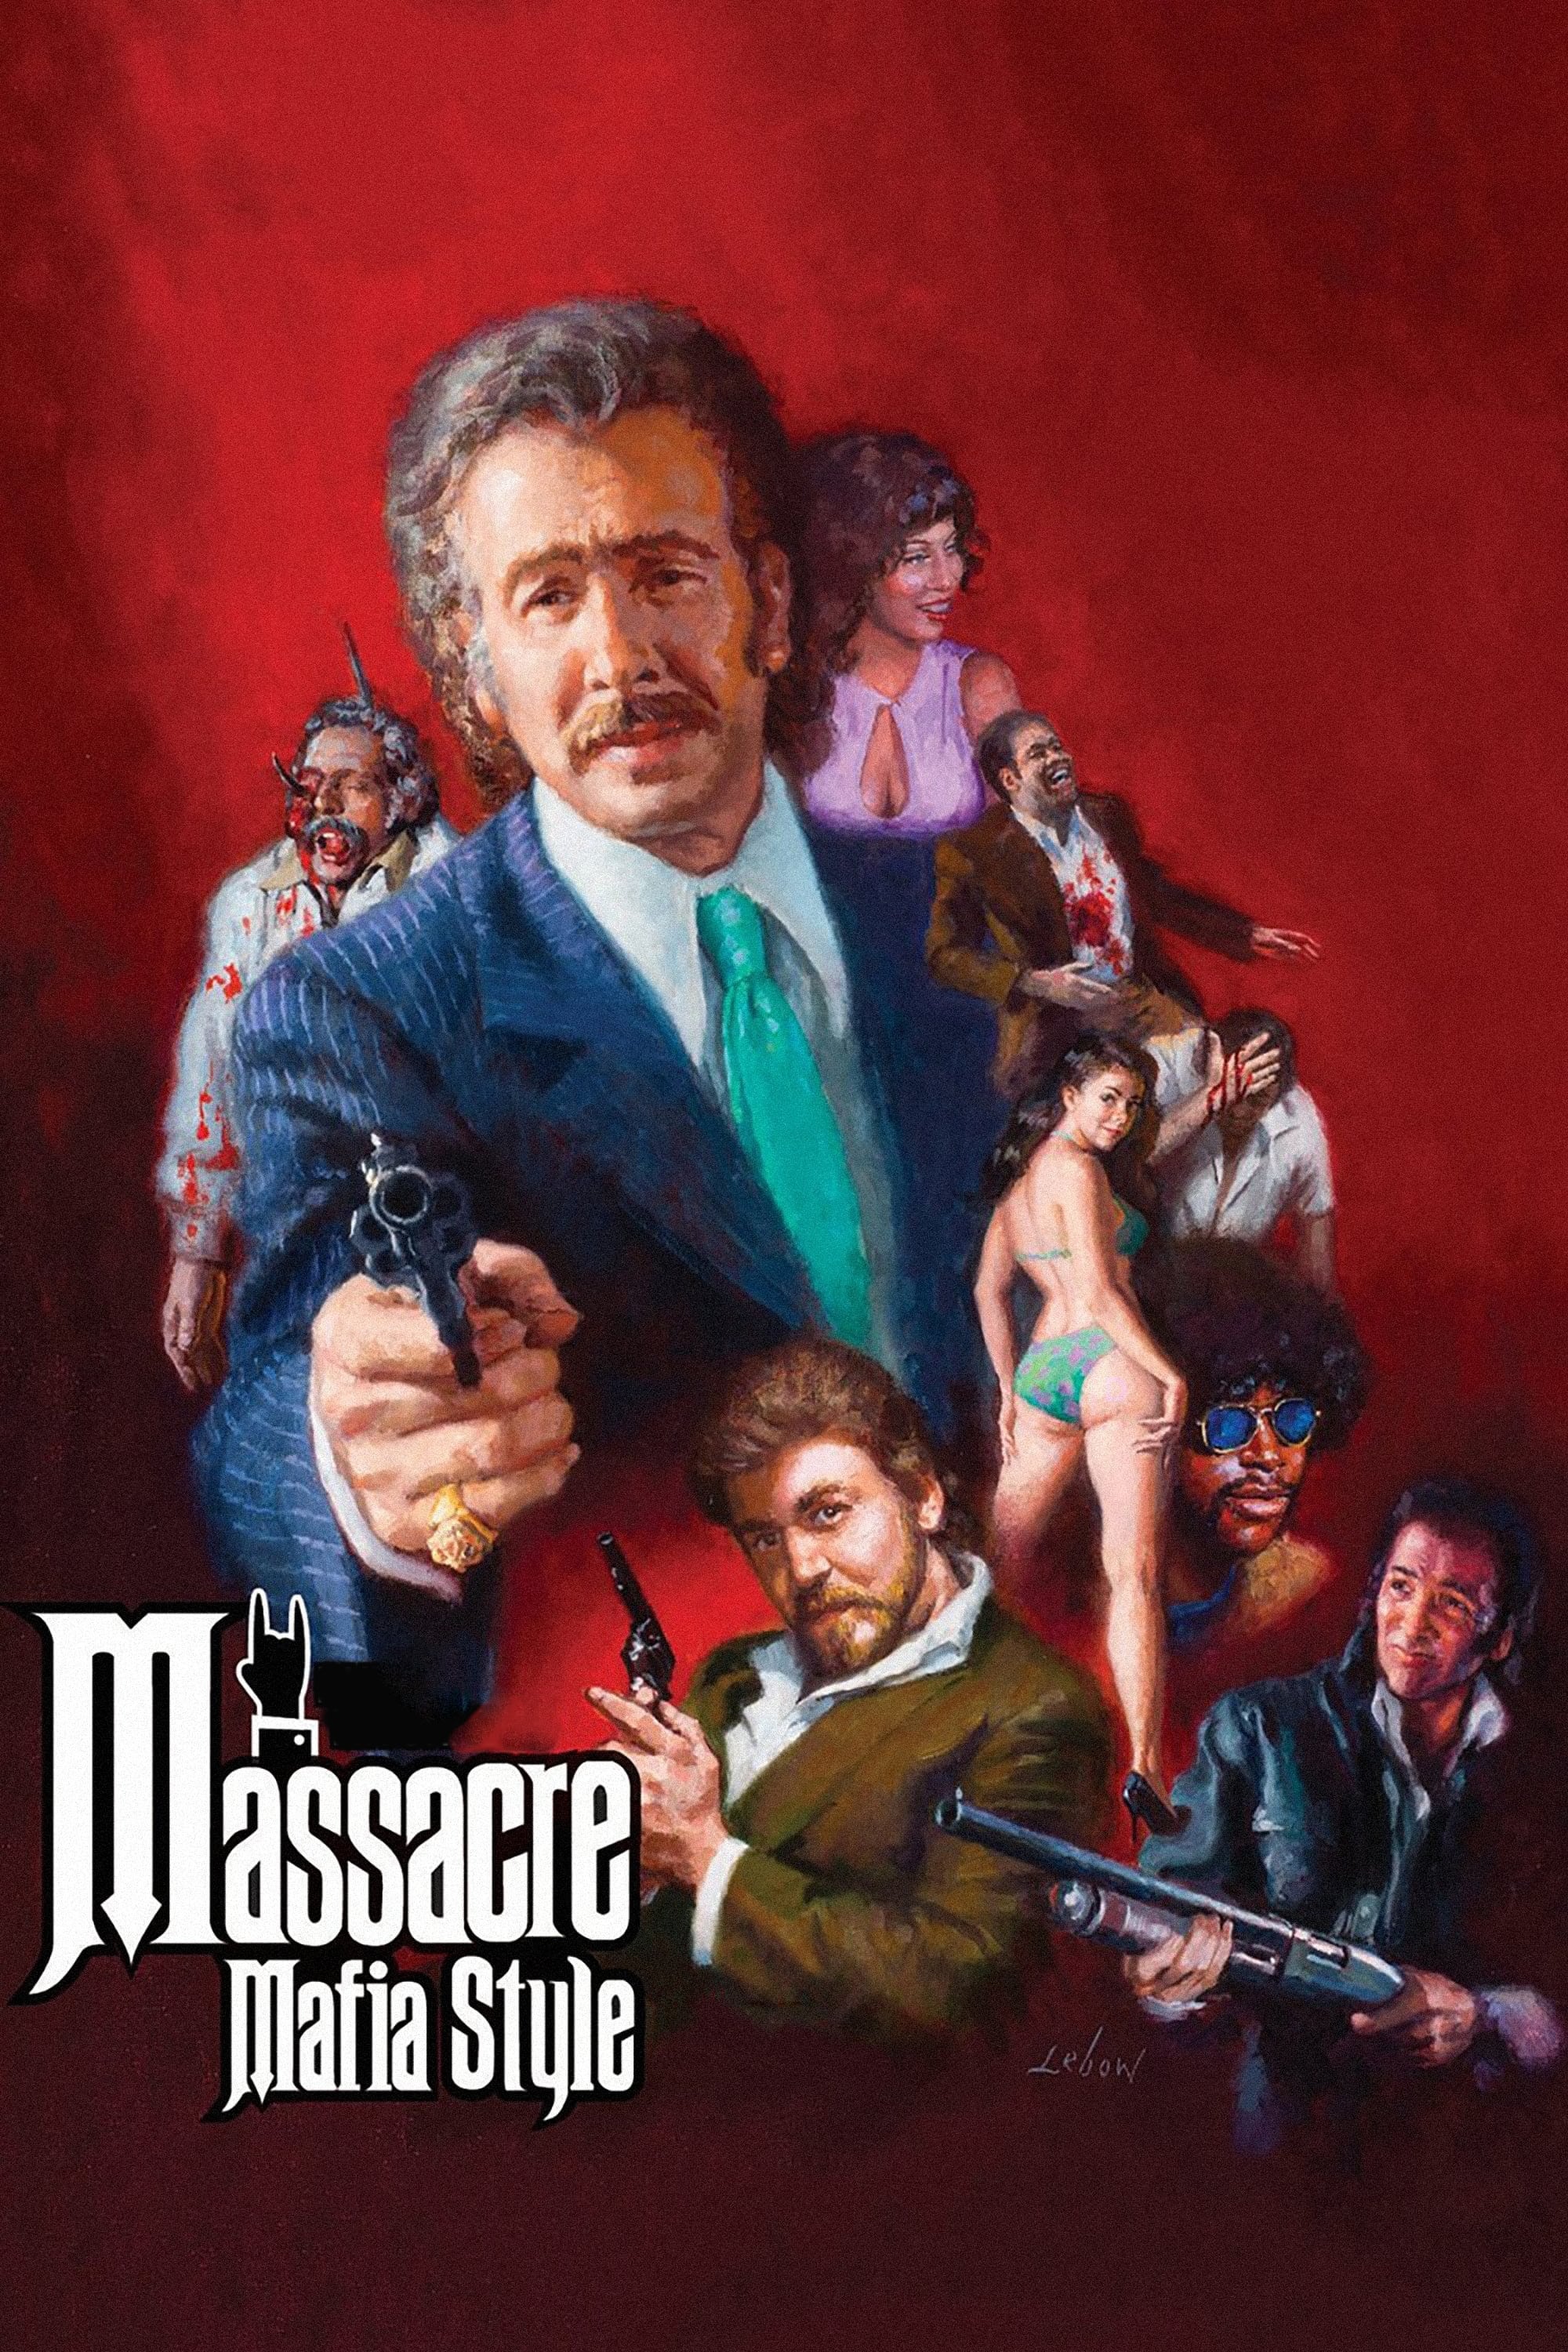 Massacre Mafia Style on FREECABLE TV